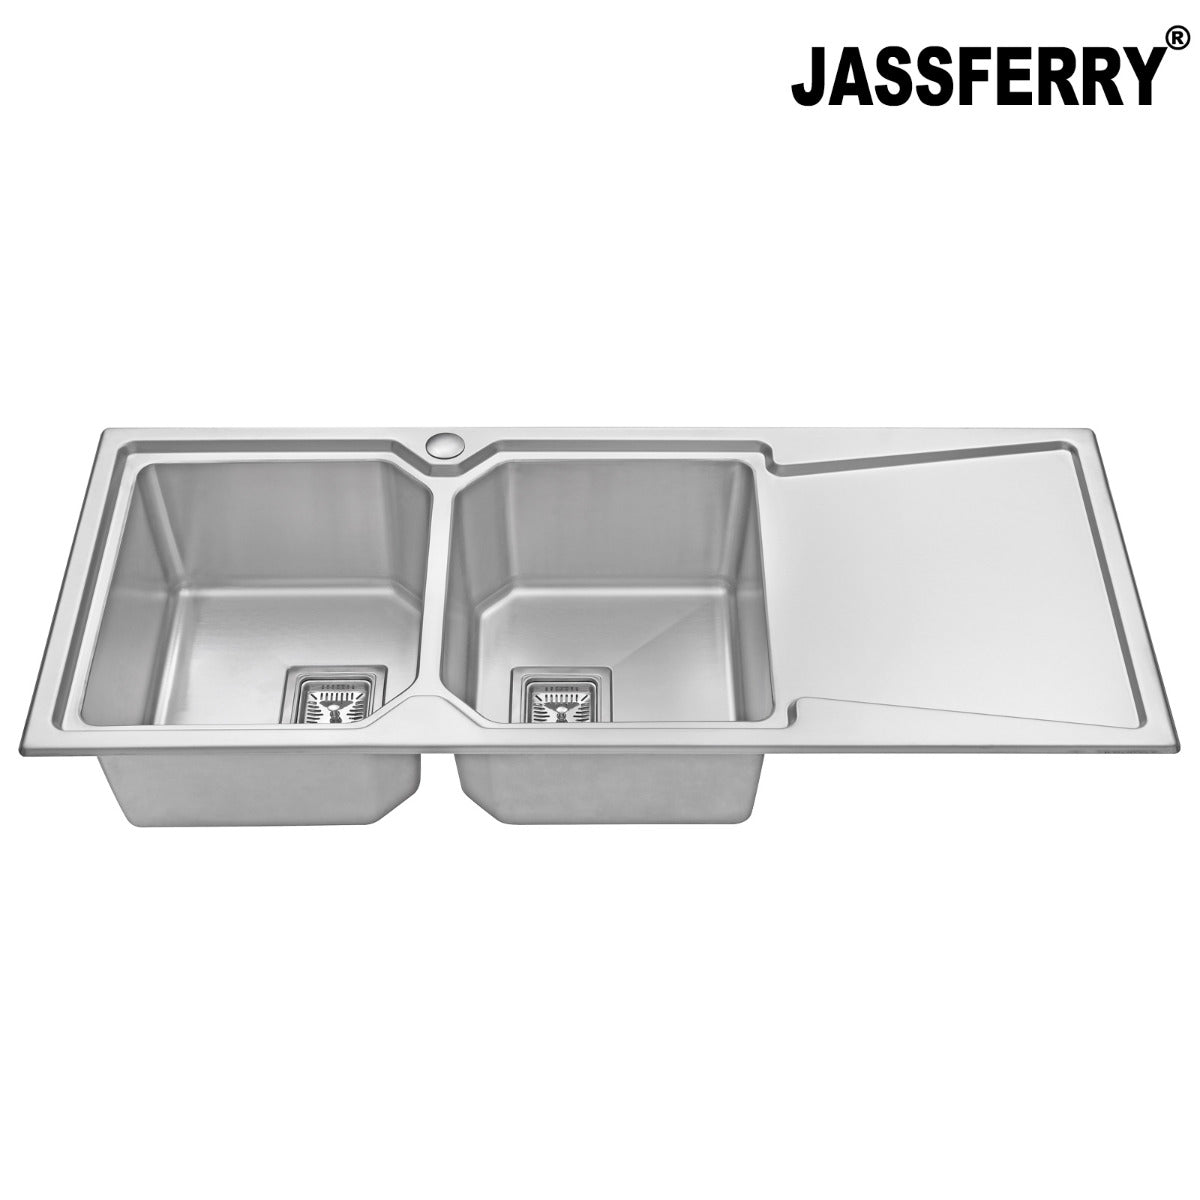 JassferryJASSFERRY Brilliant Stainless Steel Kitchen Sink Double Bowl Righthand DrainerKitchen Sinks